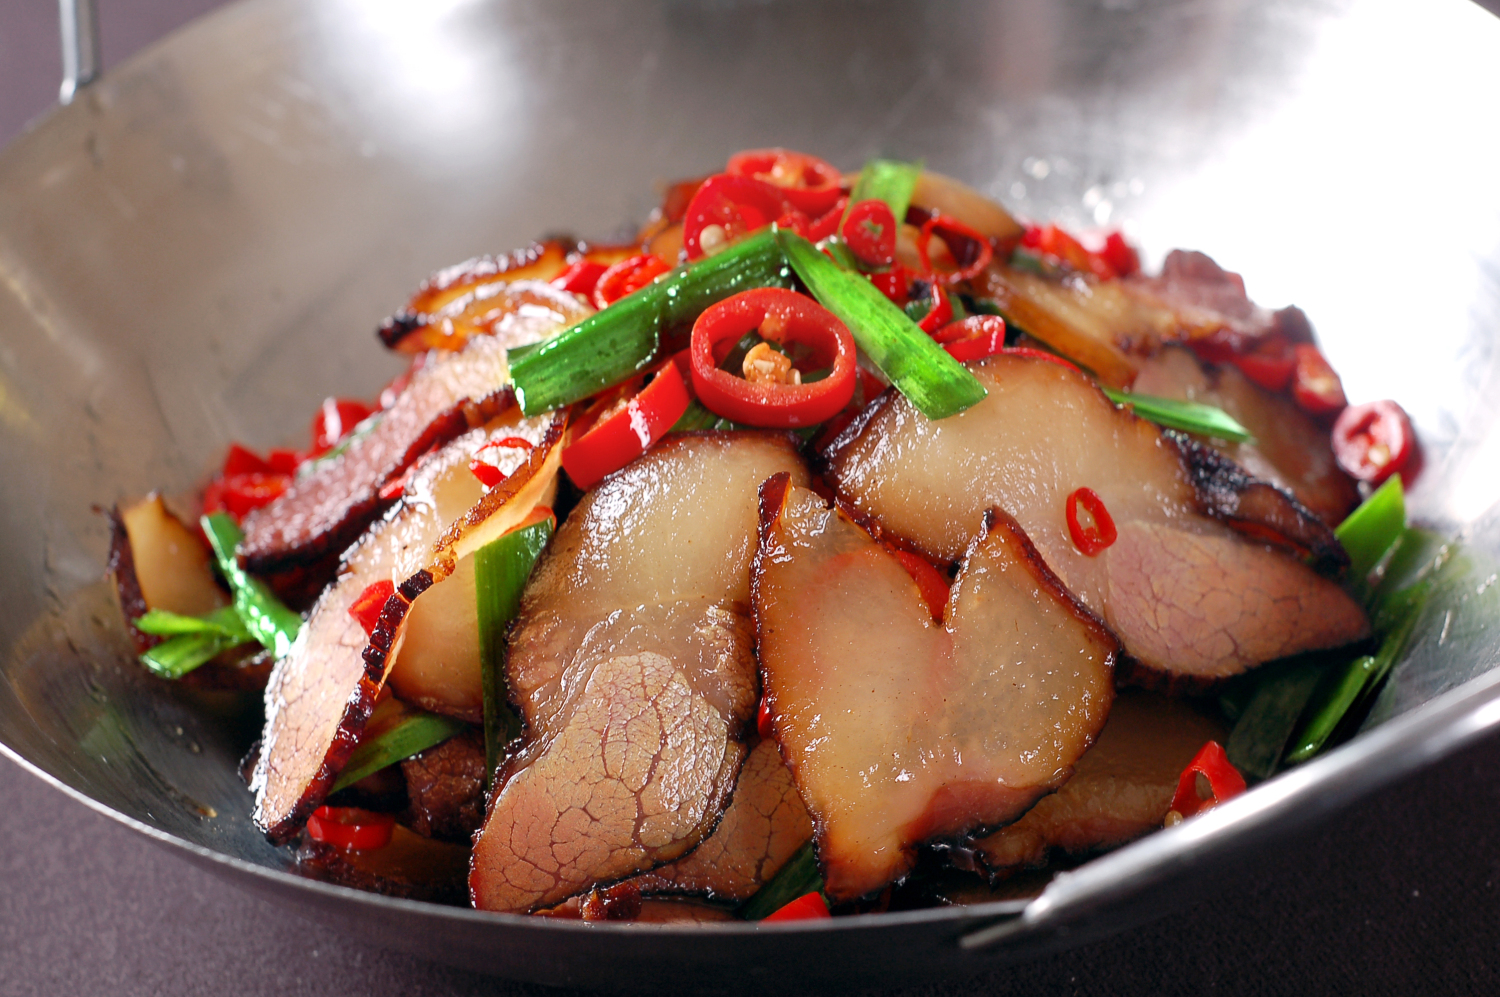 湘菜-柴火腊肉:不是太阳晒的腊肉,是当地柴火烤的哦,很美味的一道特色